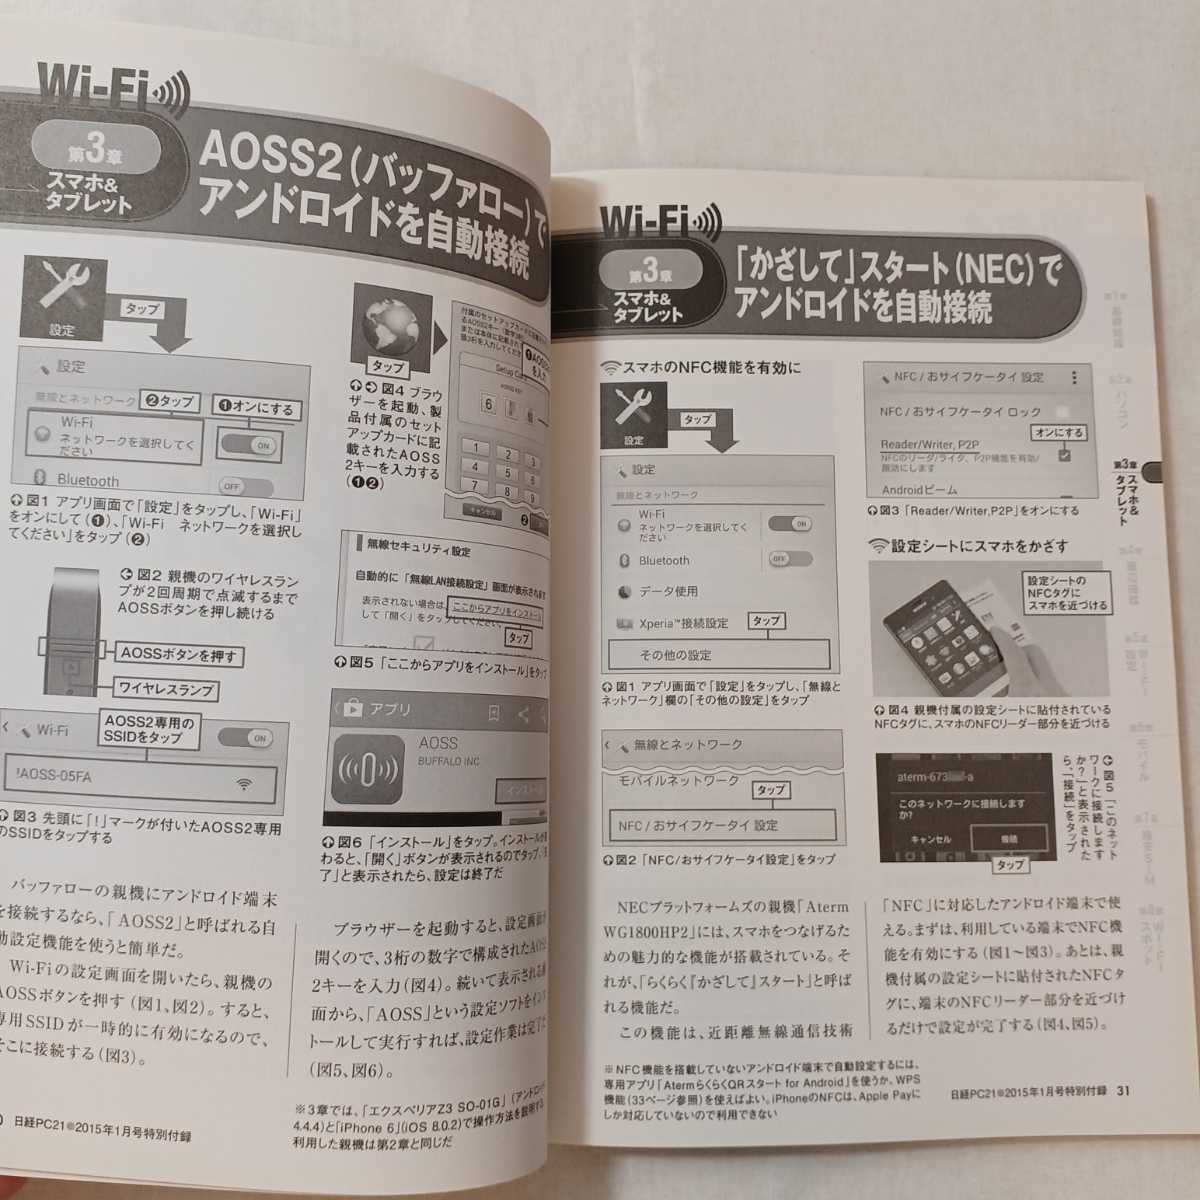 zaa-376!Wi-Fi&LTE практическое применение лексика - проблема нет. сеть подключение . Nikkei PC2015 год 1 месяц номер дополнение 